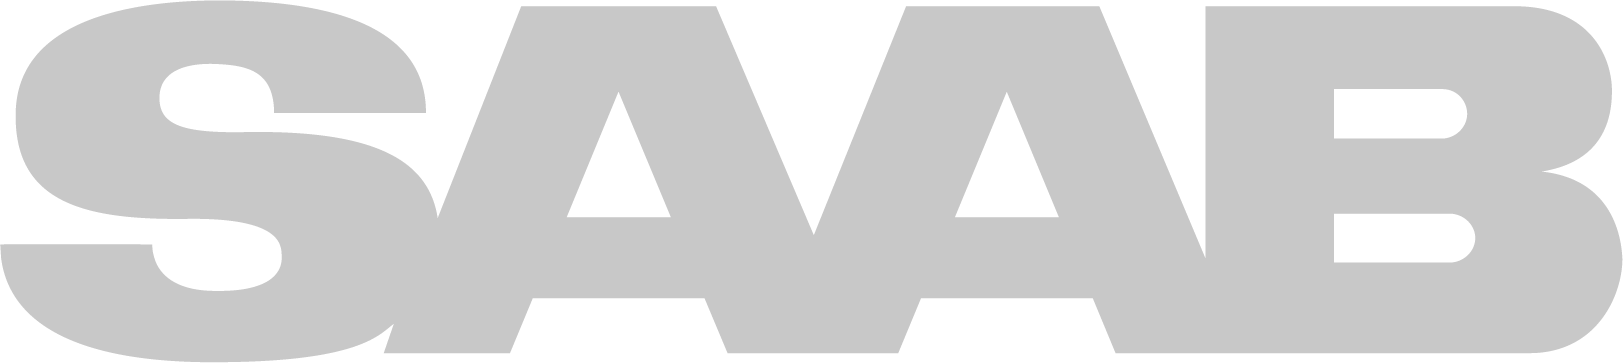 Saab Logo png